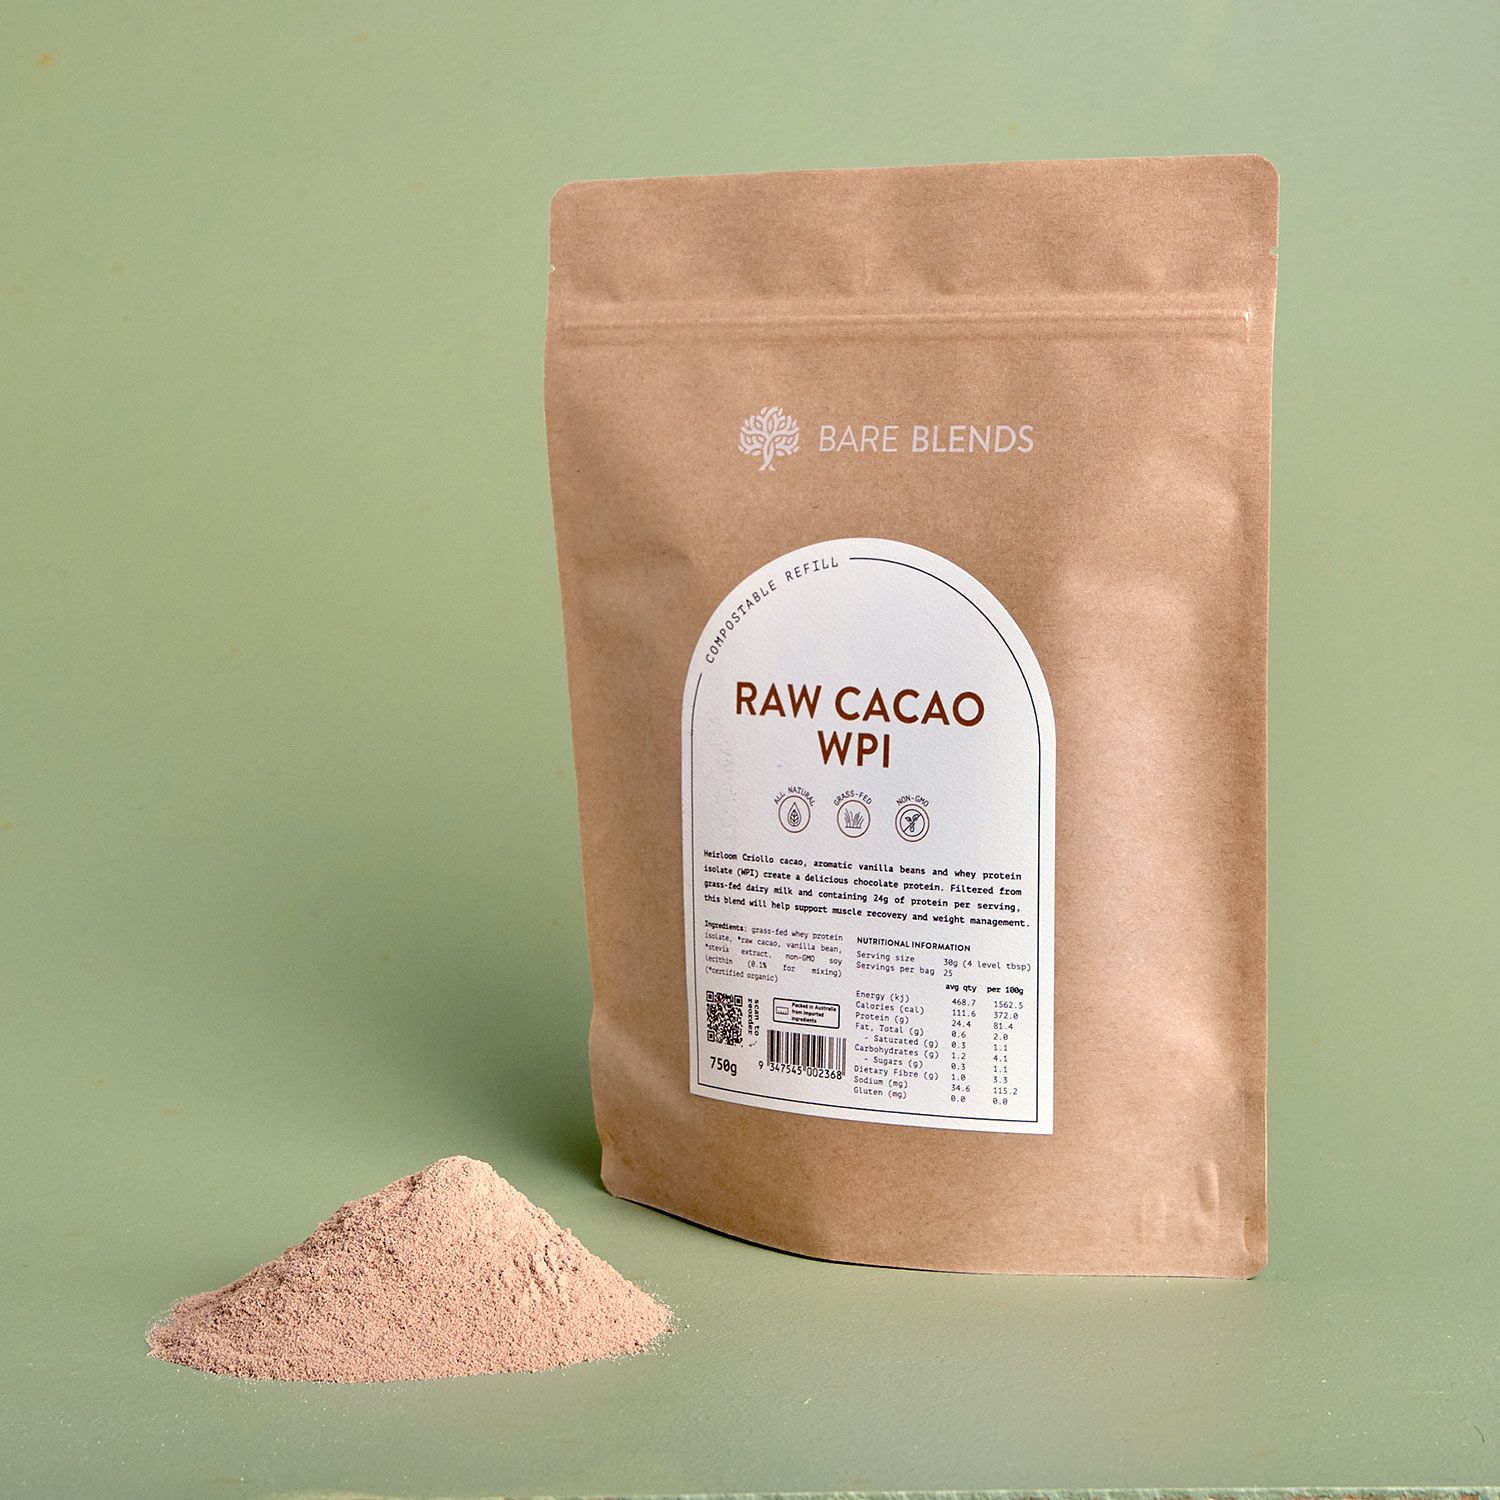 Raw Cacao WPI powder